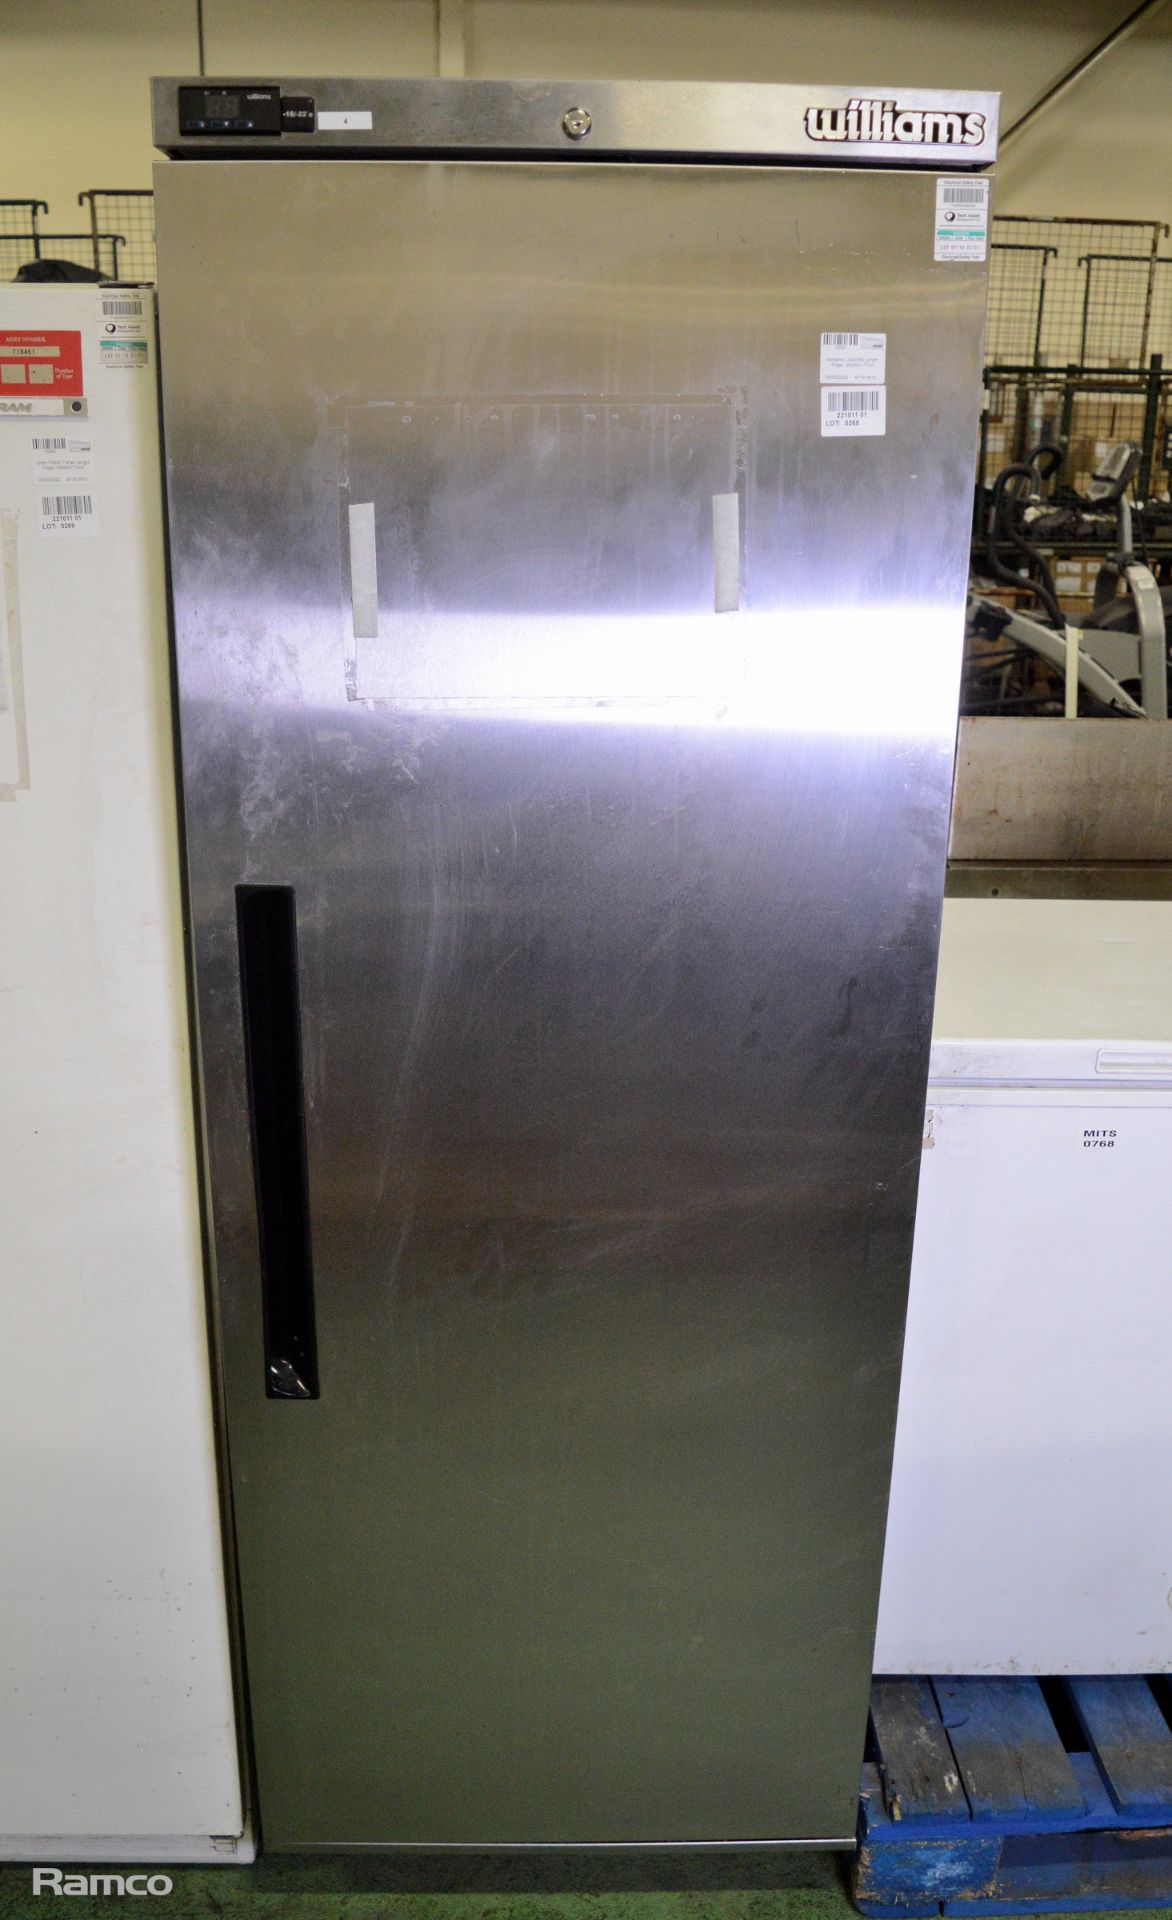 Williams LA400SS upright fridge - 65x65x177cm